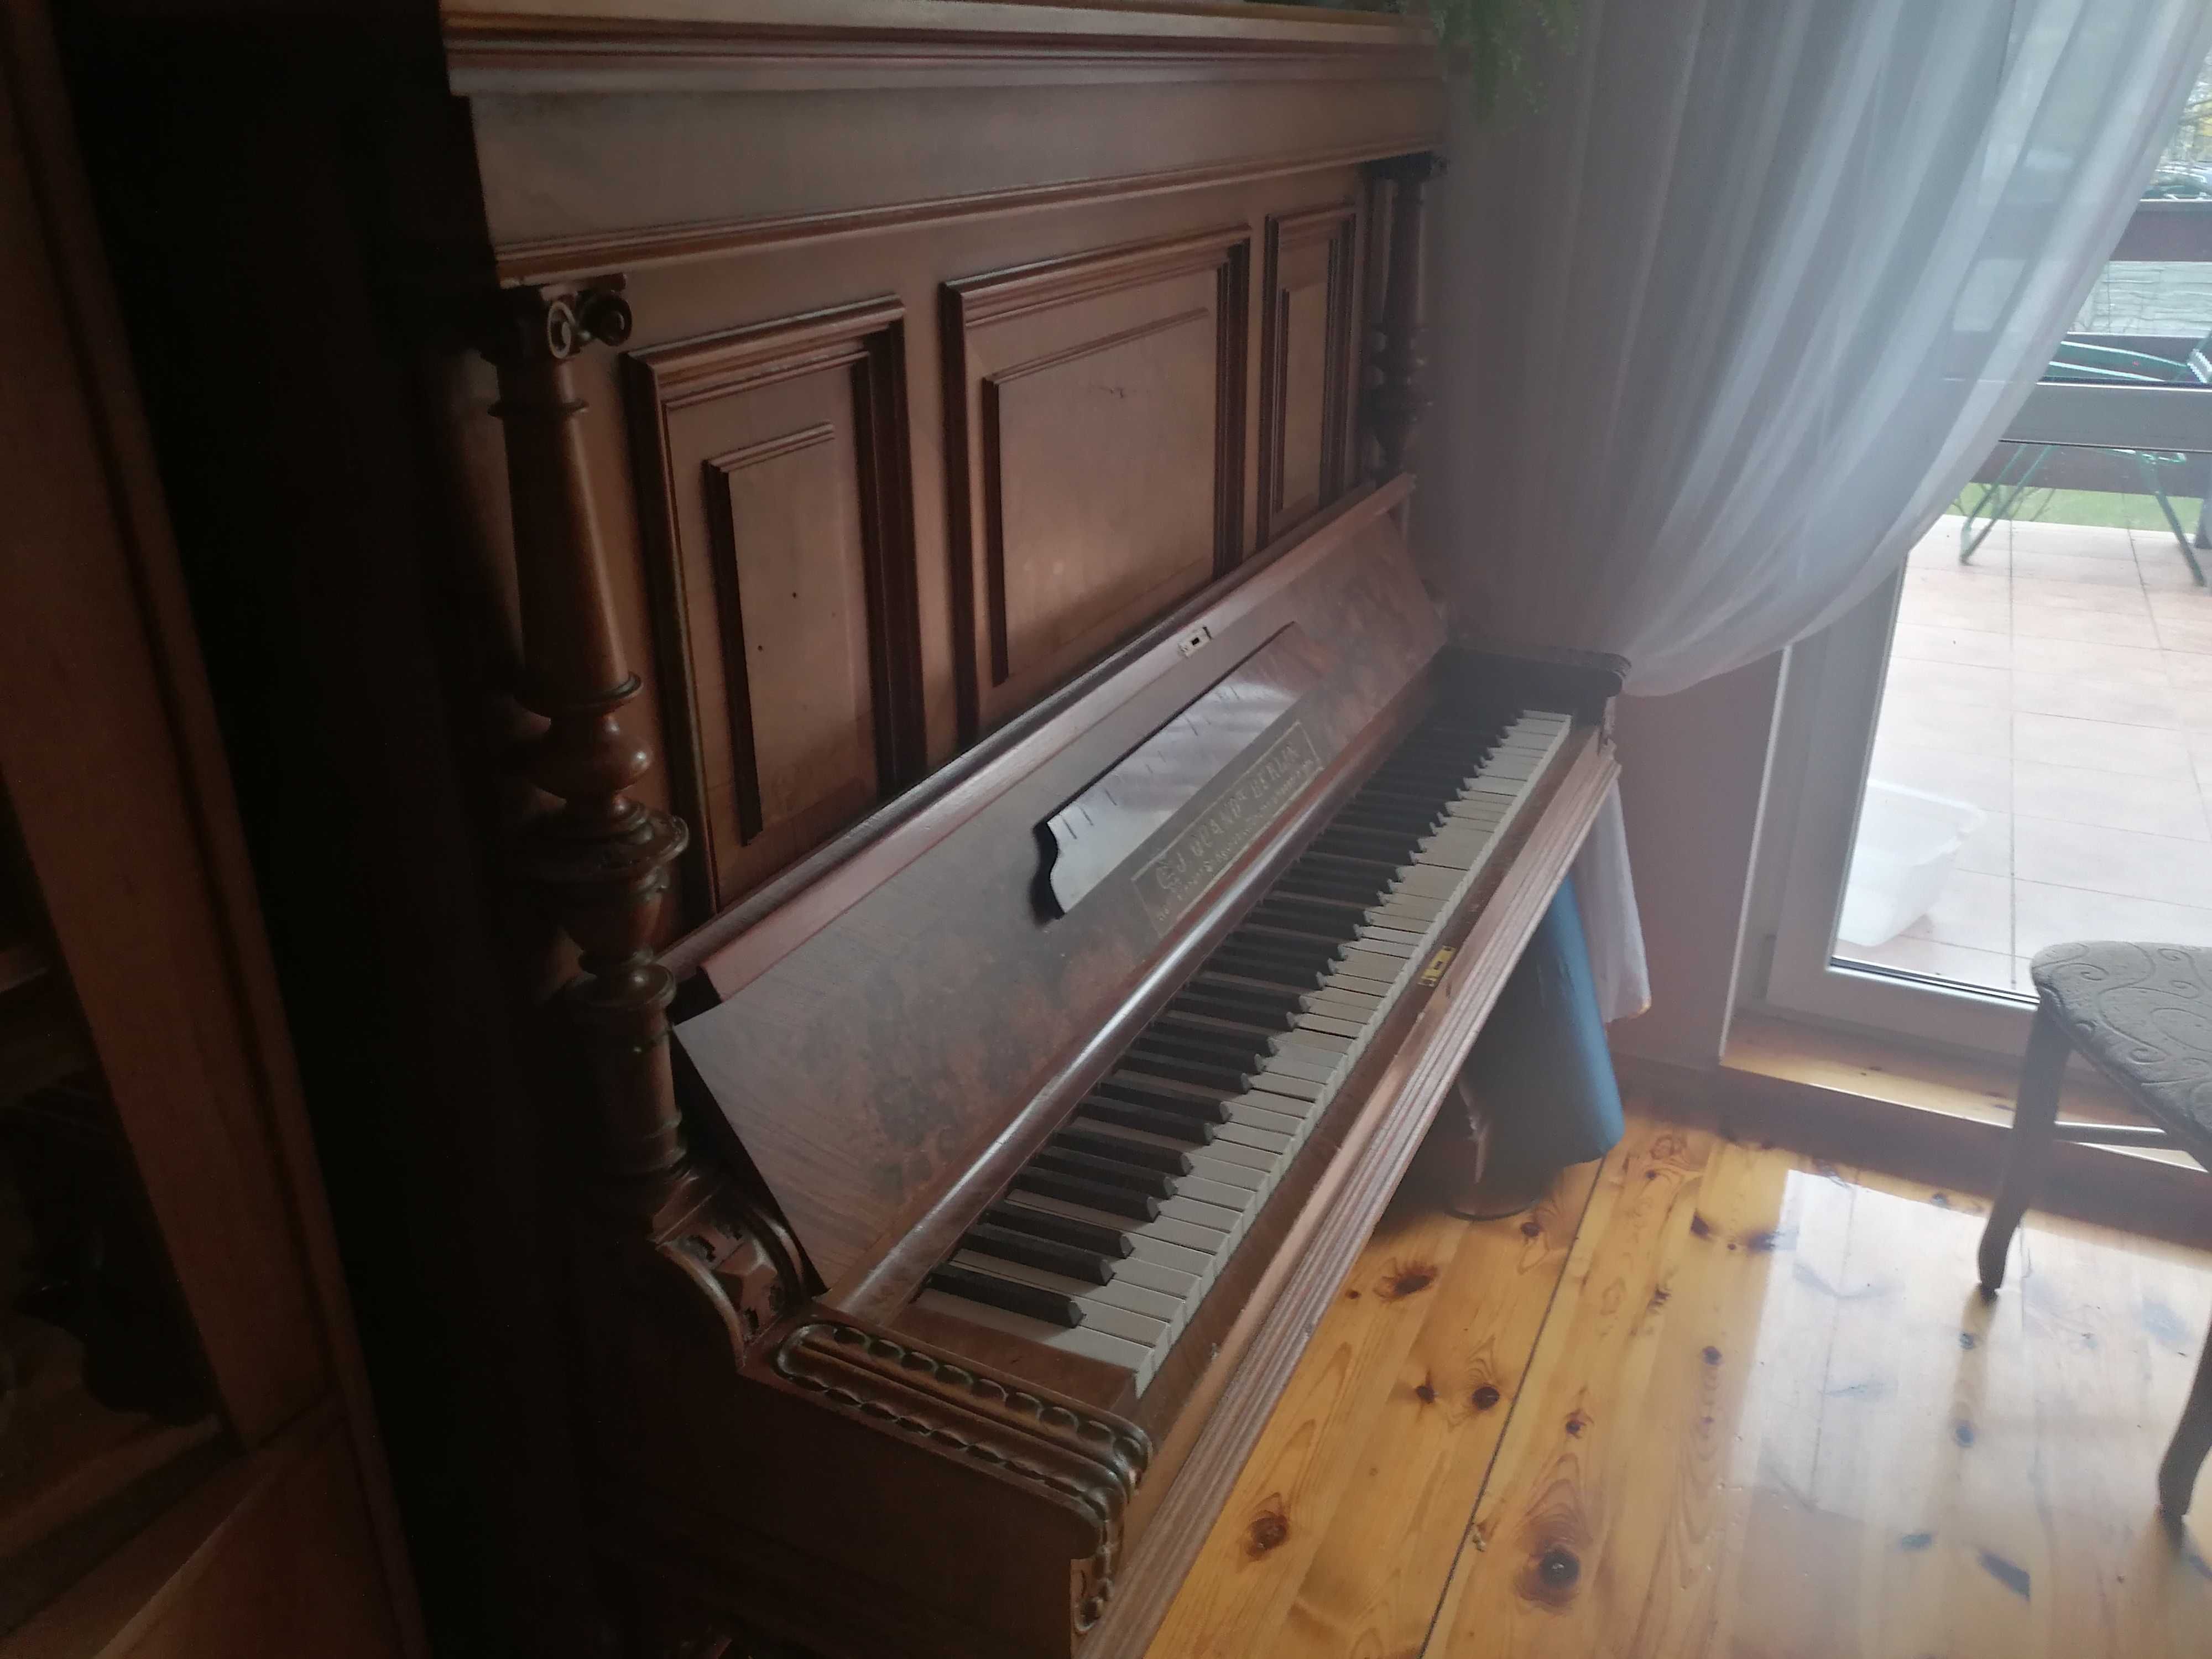 Sprzedam pianino C.J. Quandt Berlin w dobrym stanie